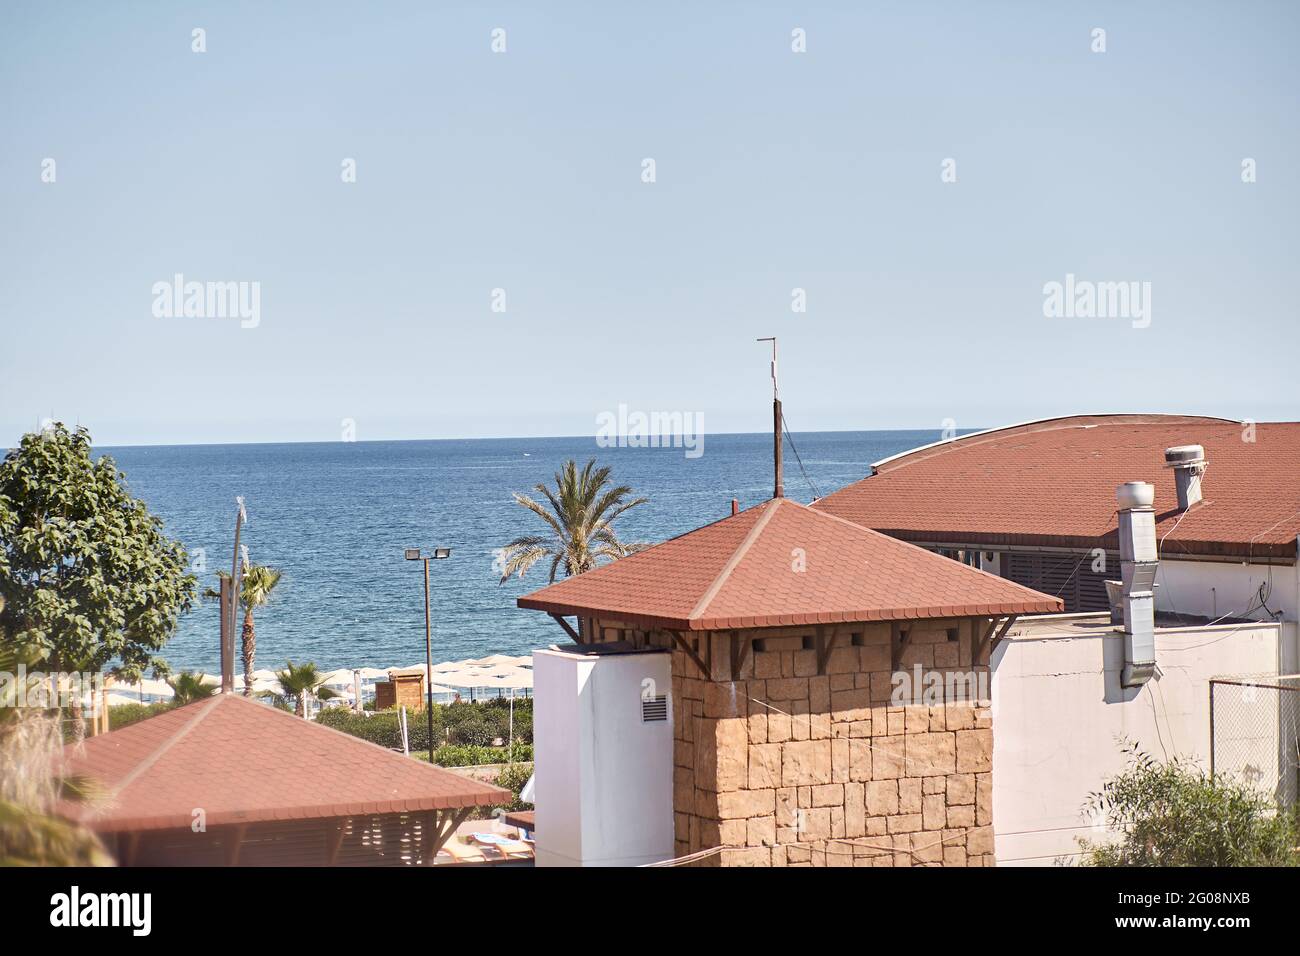 Première ligne. Vue de la terrasse à la mer par une belle journée ensoleillée. Concept de vacances d'été. Photo de haute qualité Banque D'Images